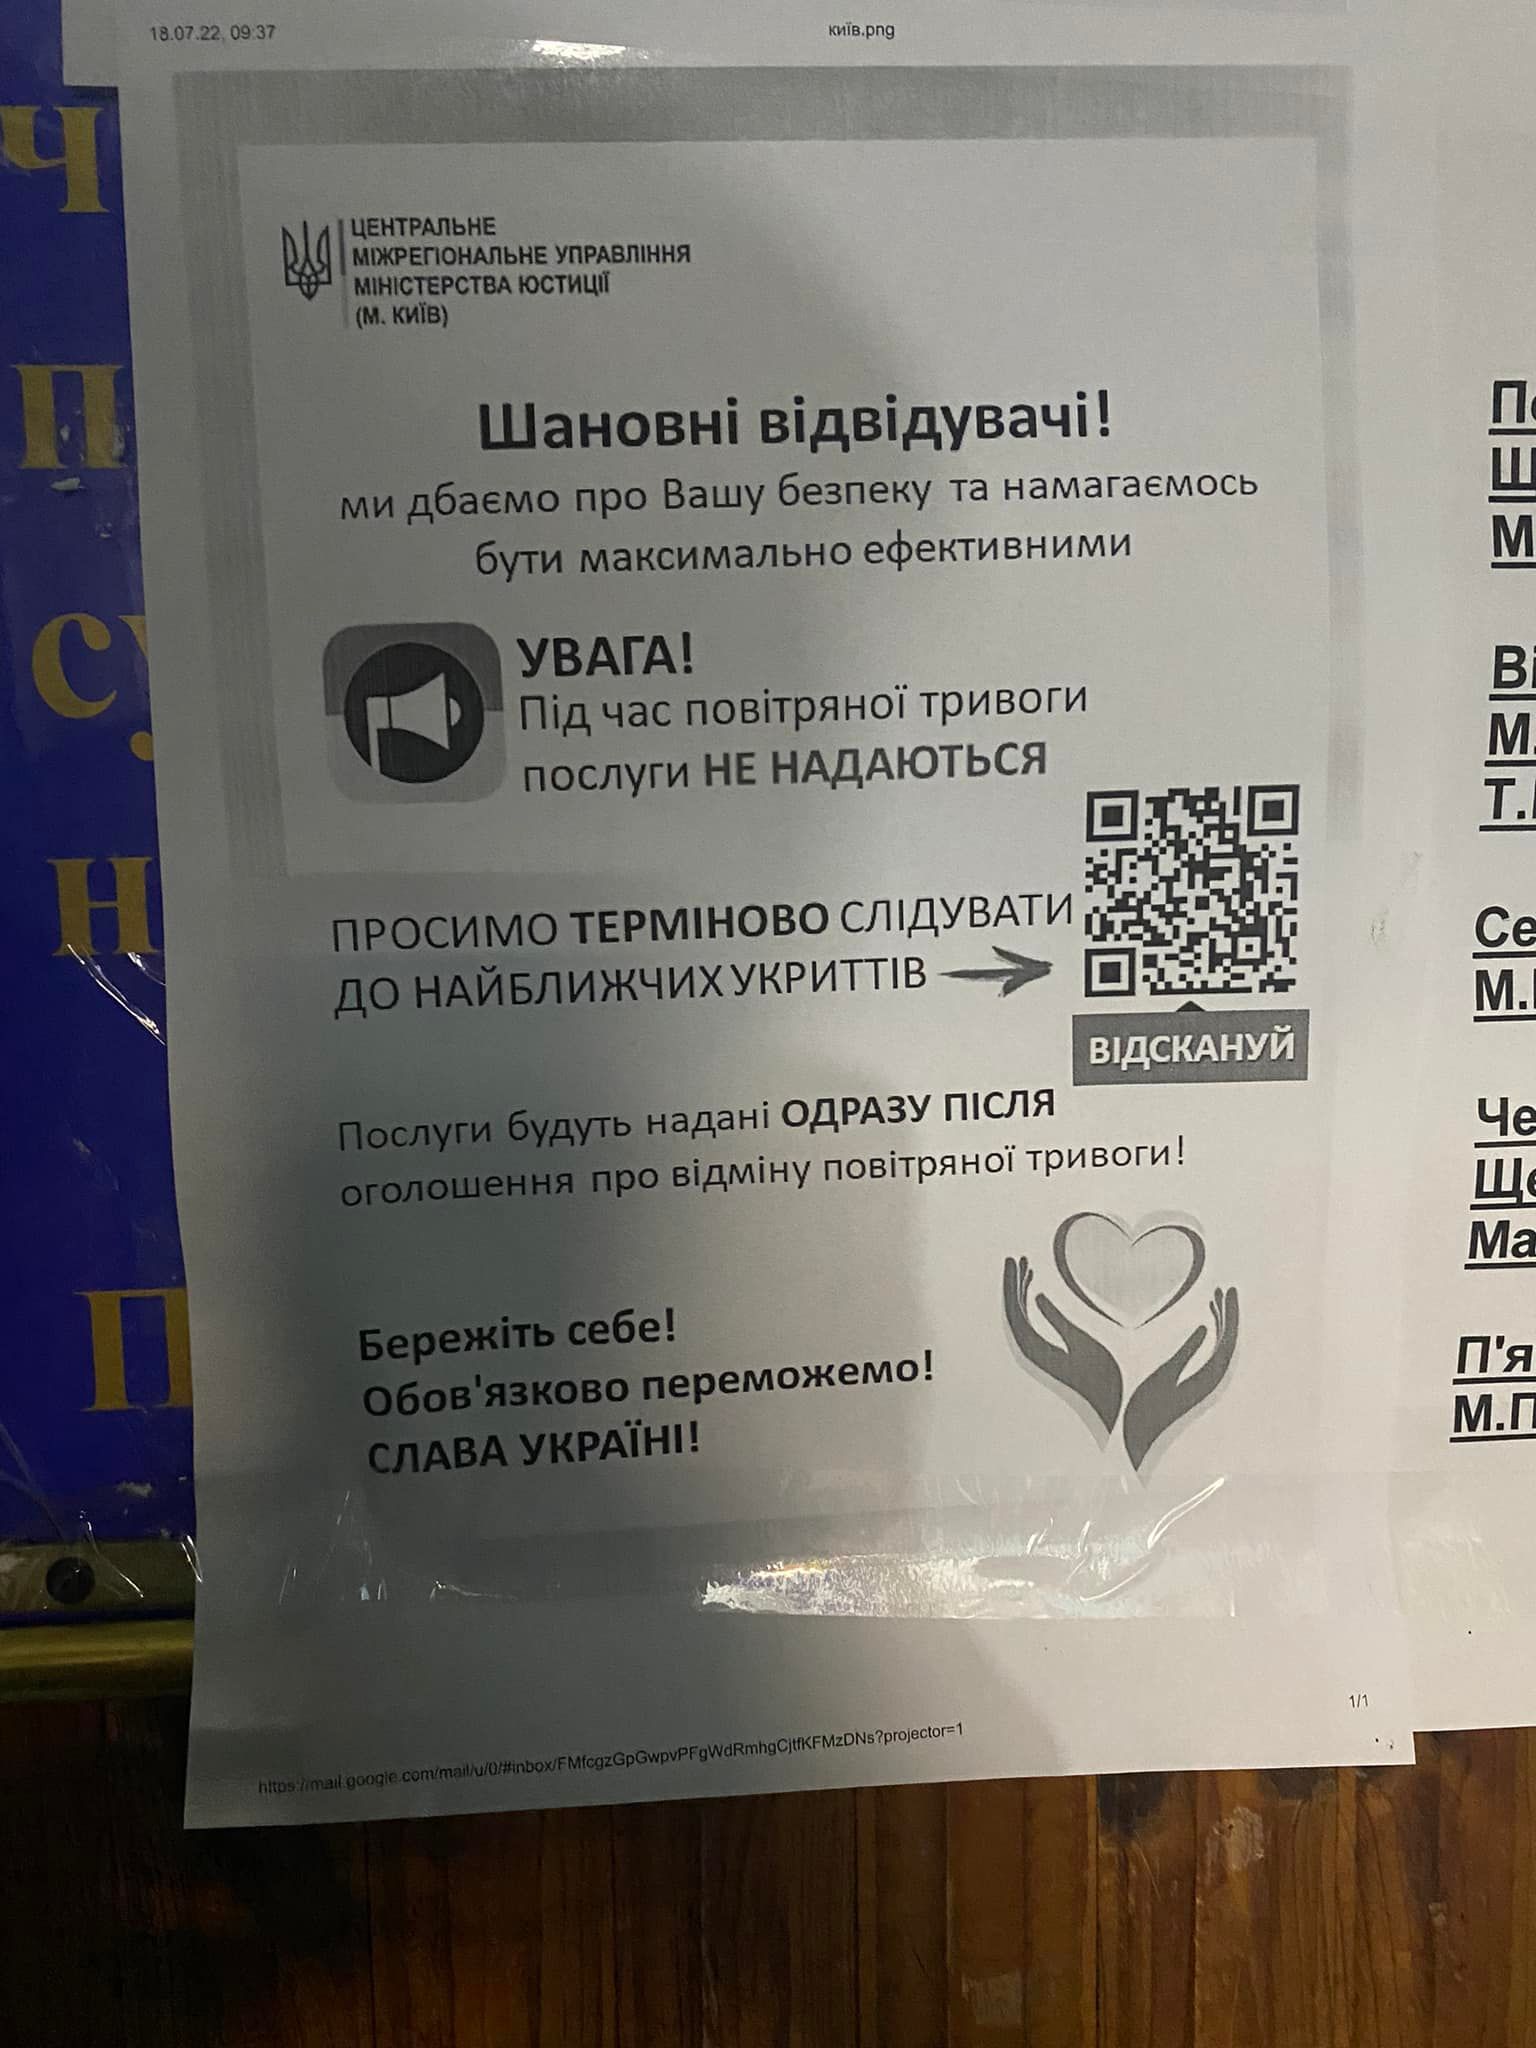 Оголошення у державному нотаріаті – лише для власників смартфонів. Фото: facebook.com/kupnovitskaya